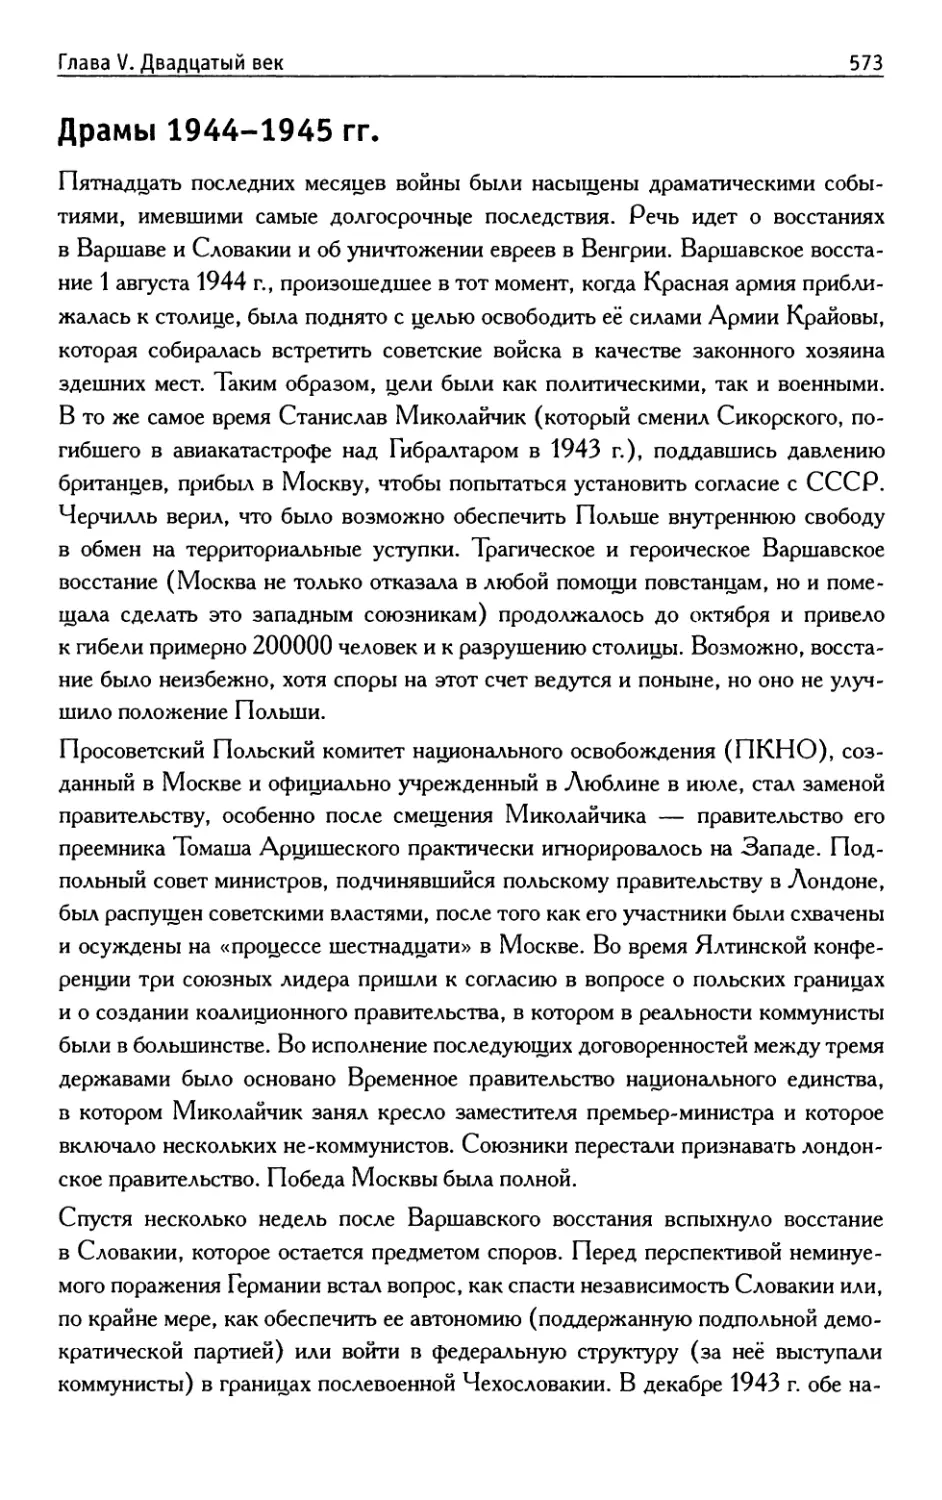 Драмы 1944-1945 гг.